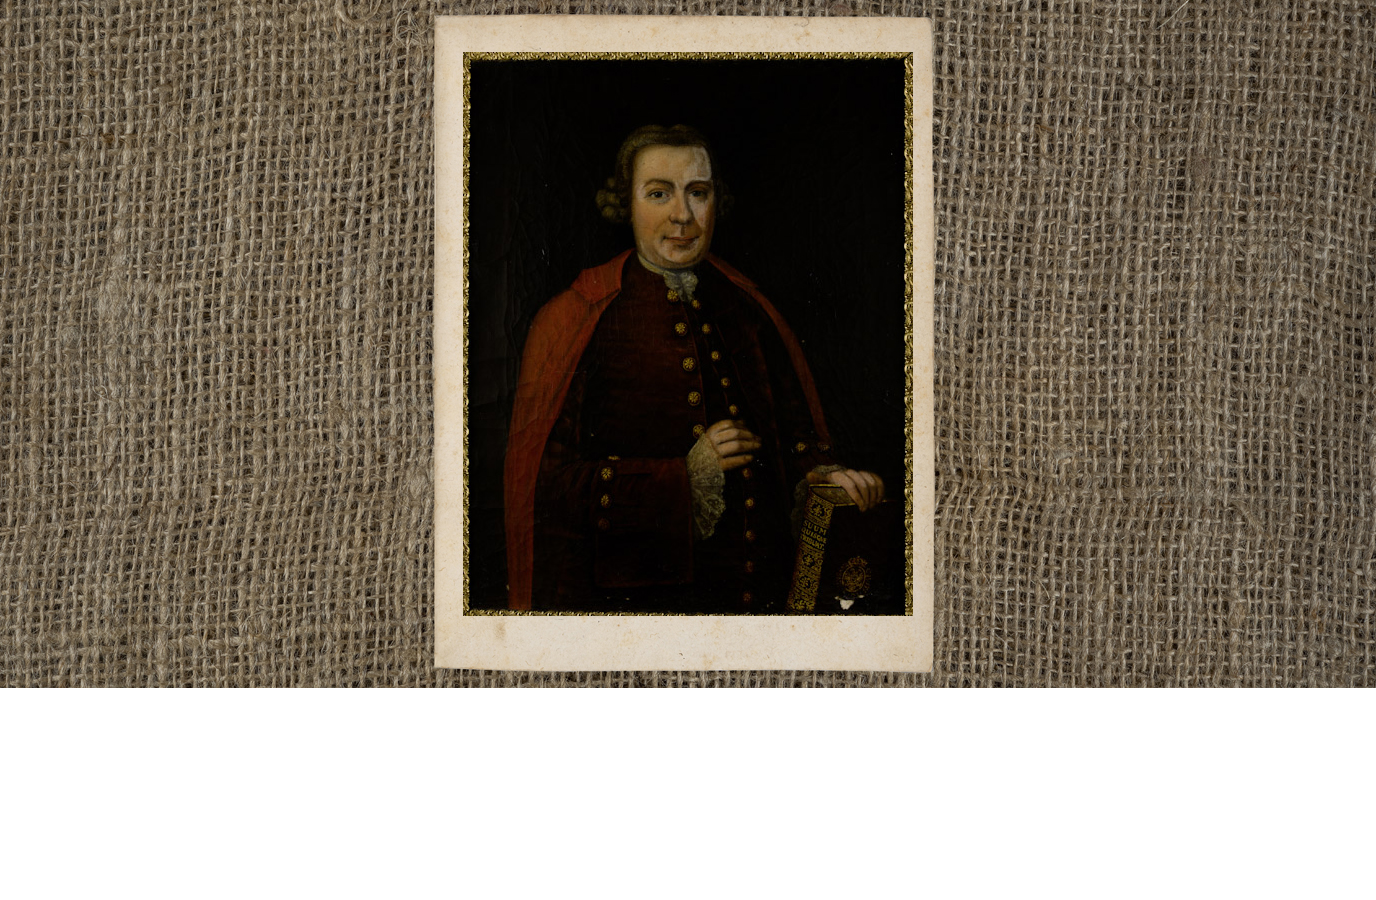 Een portret van H. J. Nauta geschilderd door L. J. van der Warft in 1769. Het portret werd in 1854 door mr. Jasper Ganderheyden, kantonrechter te Zuidhorn, aan de Universiteitsbibliotheek geschonken en is nu in bezit van het Universiteitsmuseum.A portrait of H. J. Nauta, painted by L. J. van der Warft in 1769. Mr. Ganderheyden, who was a cantonal judge in Zuidhorn, gave the portrait to the University Library in 1854. It is currently held by the University Museum.